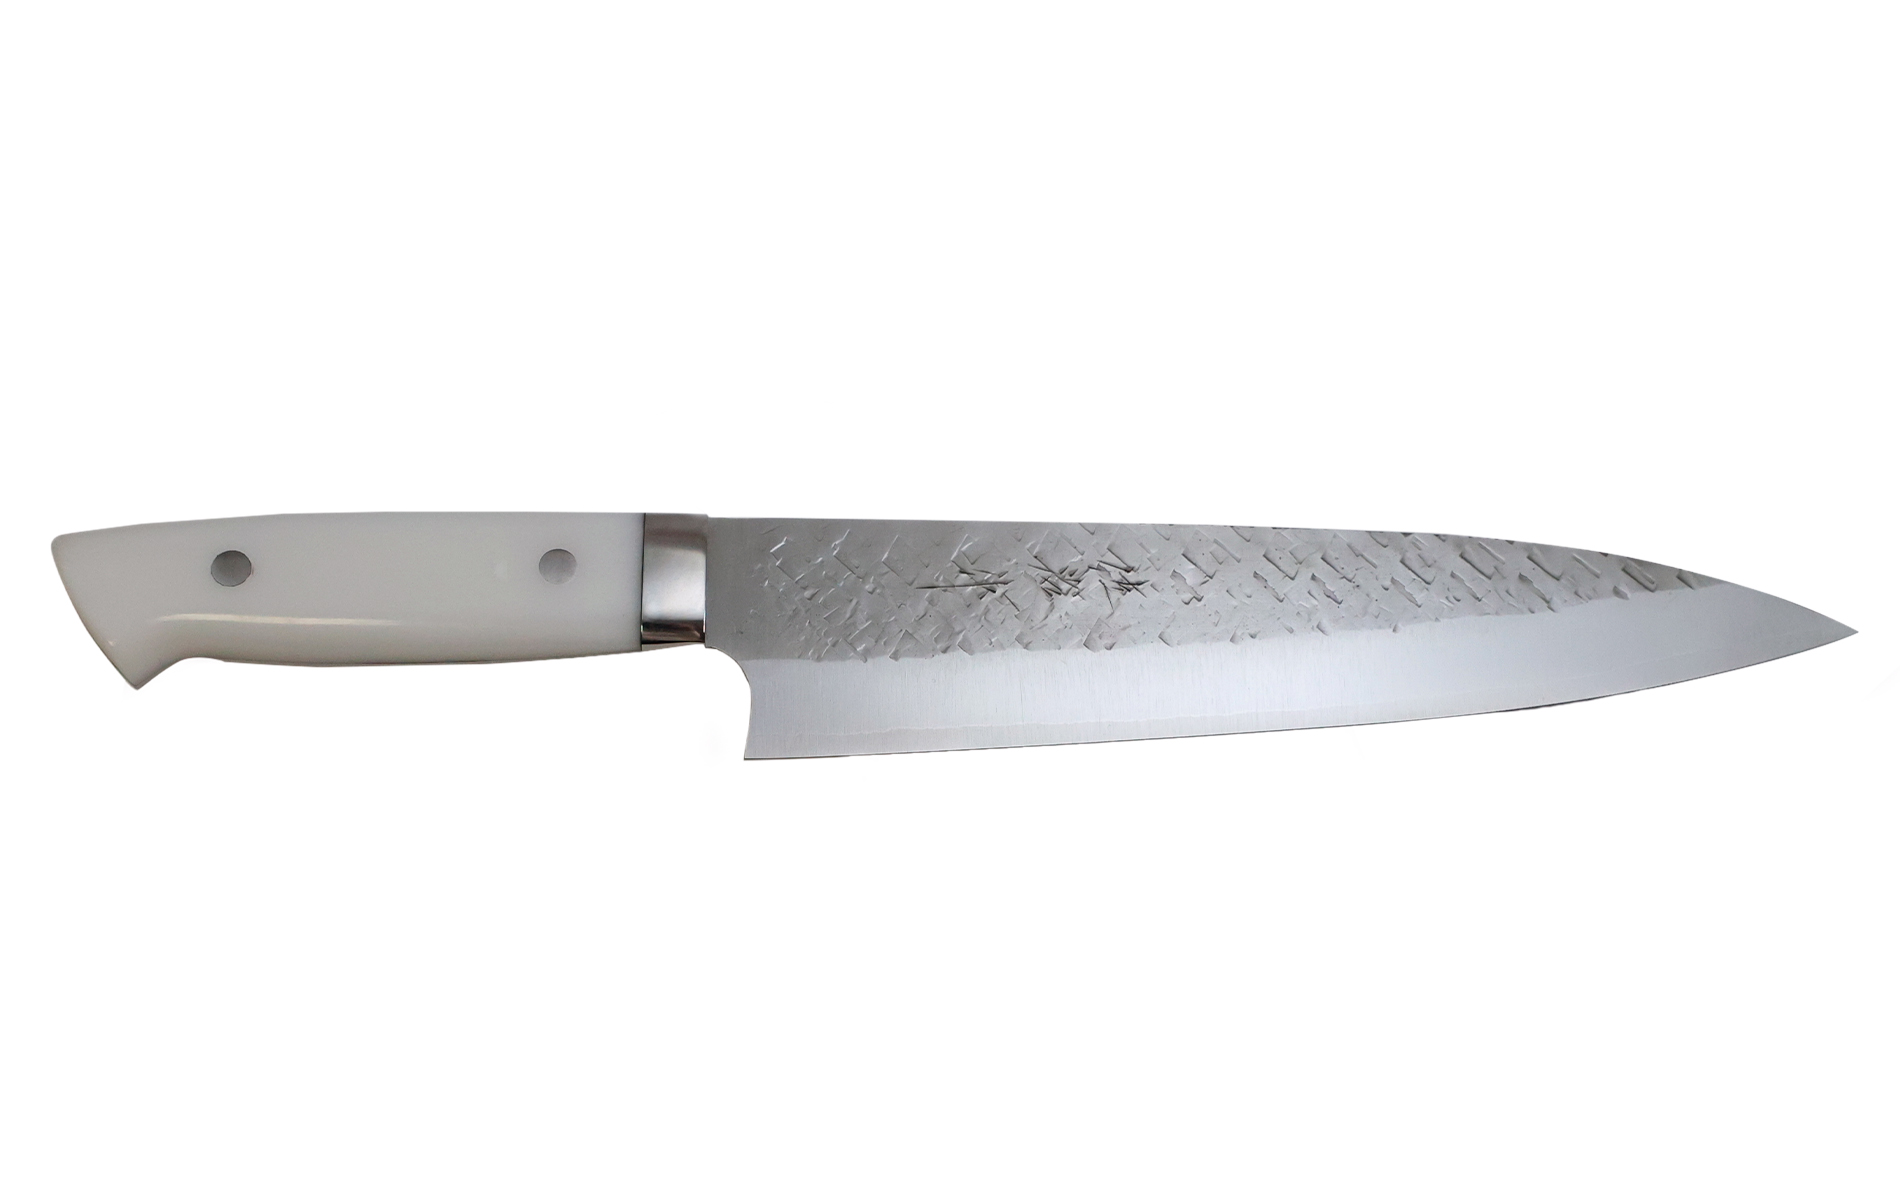 Couteau japonais artisanal SRS13 de Takeshi Saji - Couteau gyuto 21 cm Corian© blanc